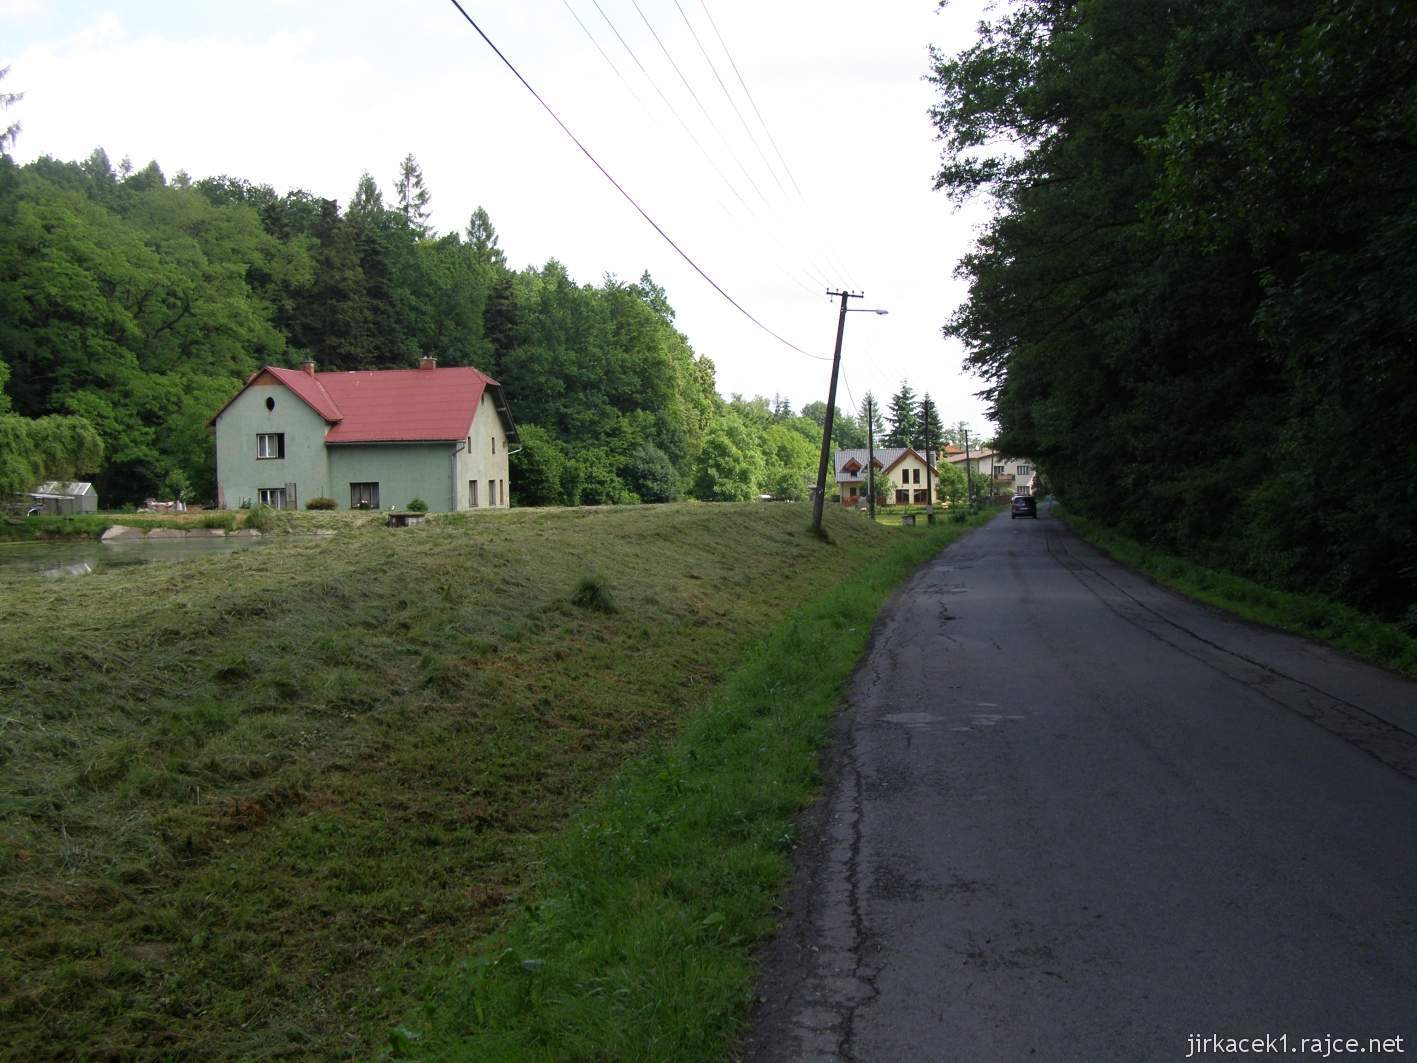 Chabičov ve Slezsku - Dračí mlýn Na Valše 05 - mlýn a silnice